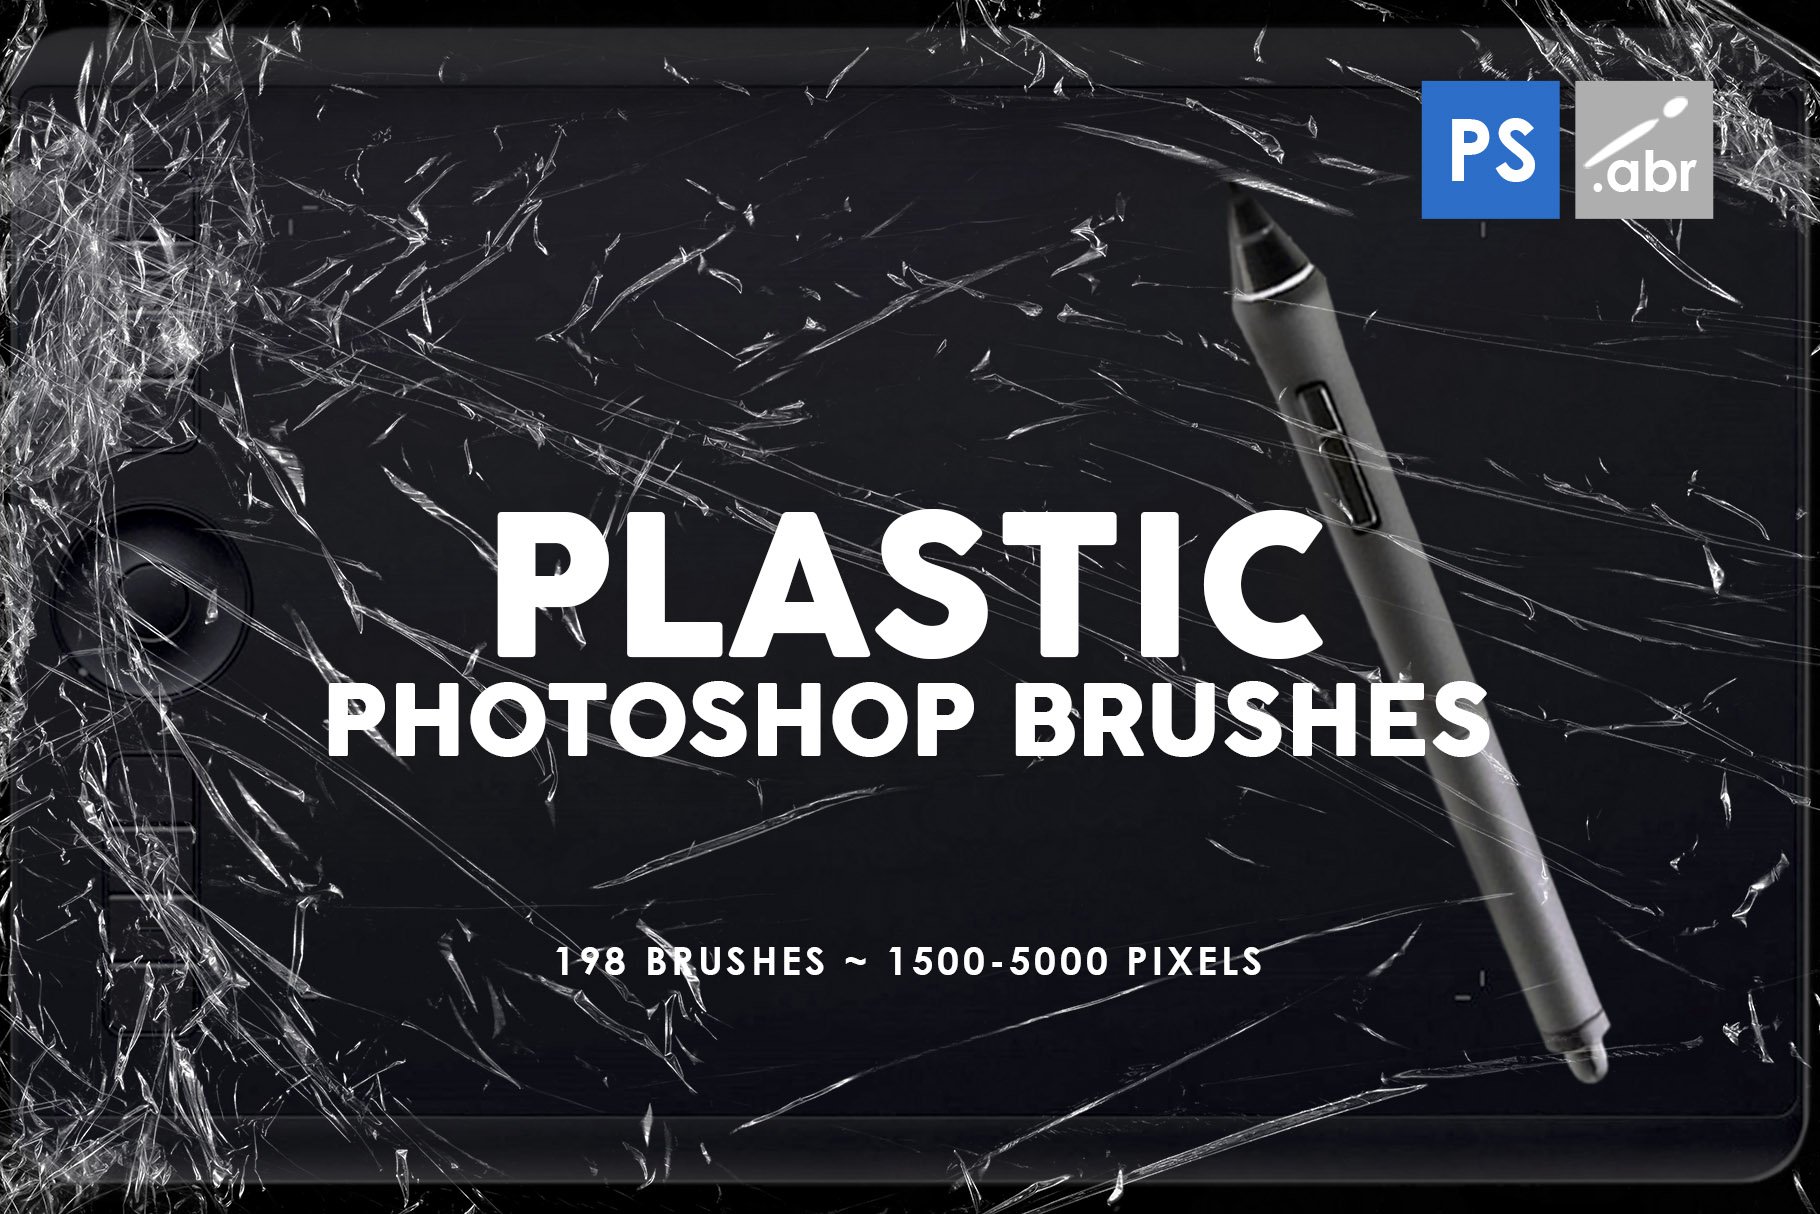 198 Plastic Photoshop Brushescover image.